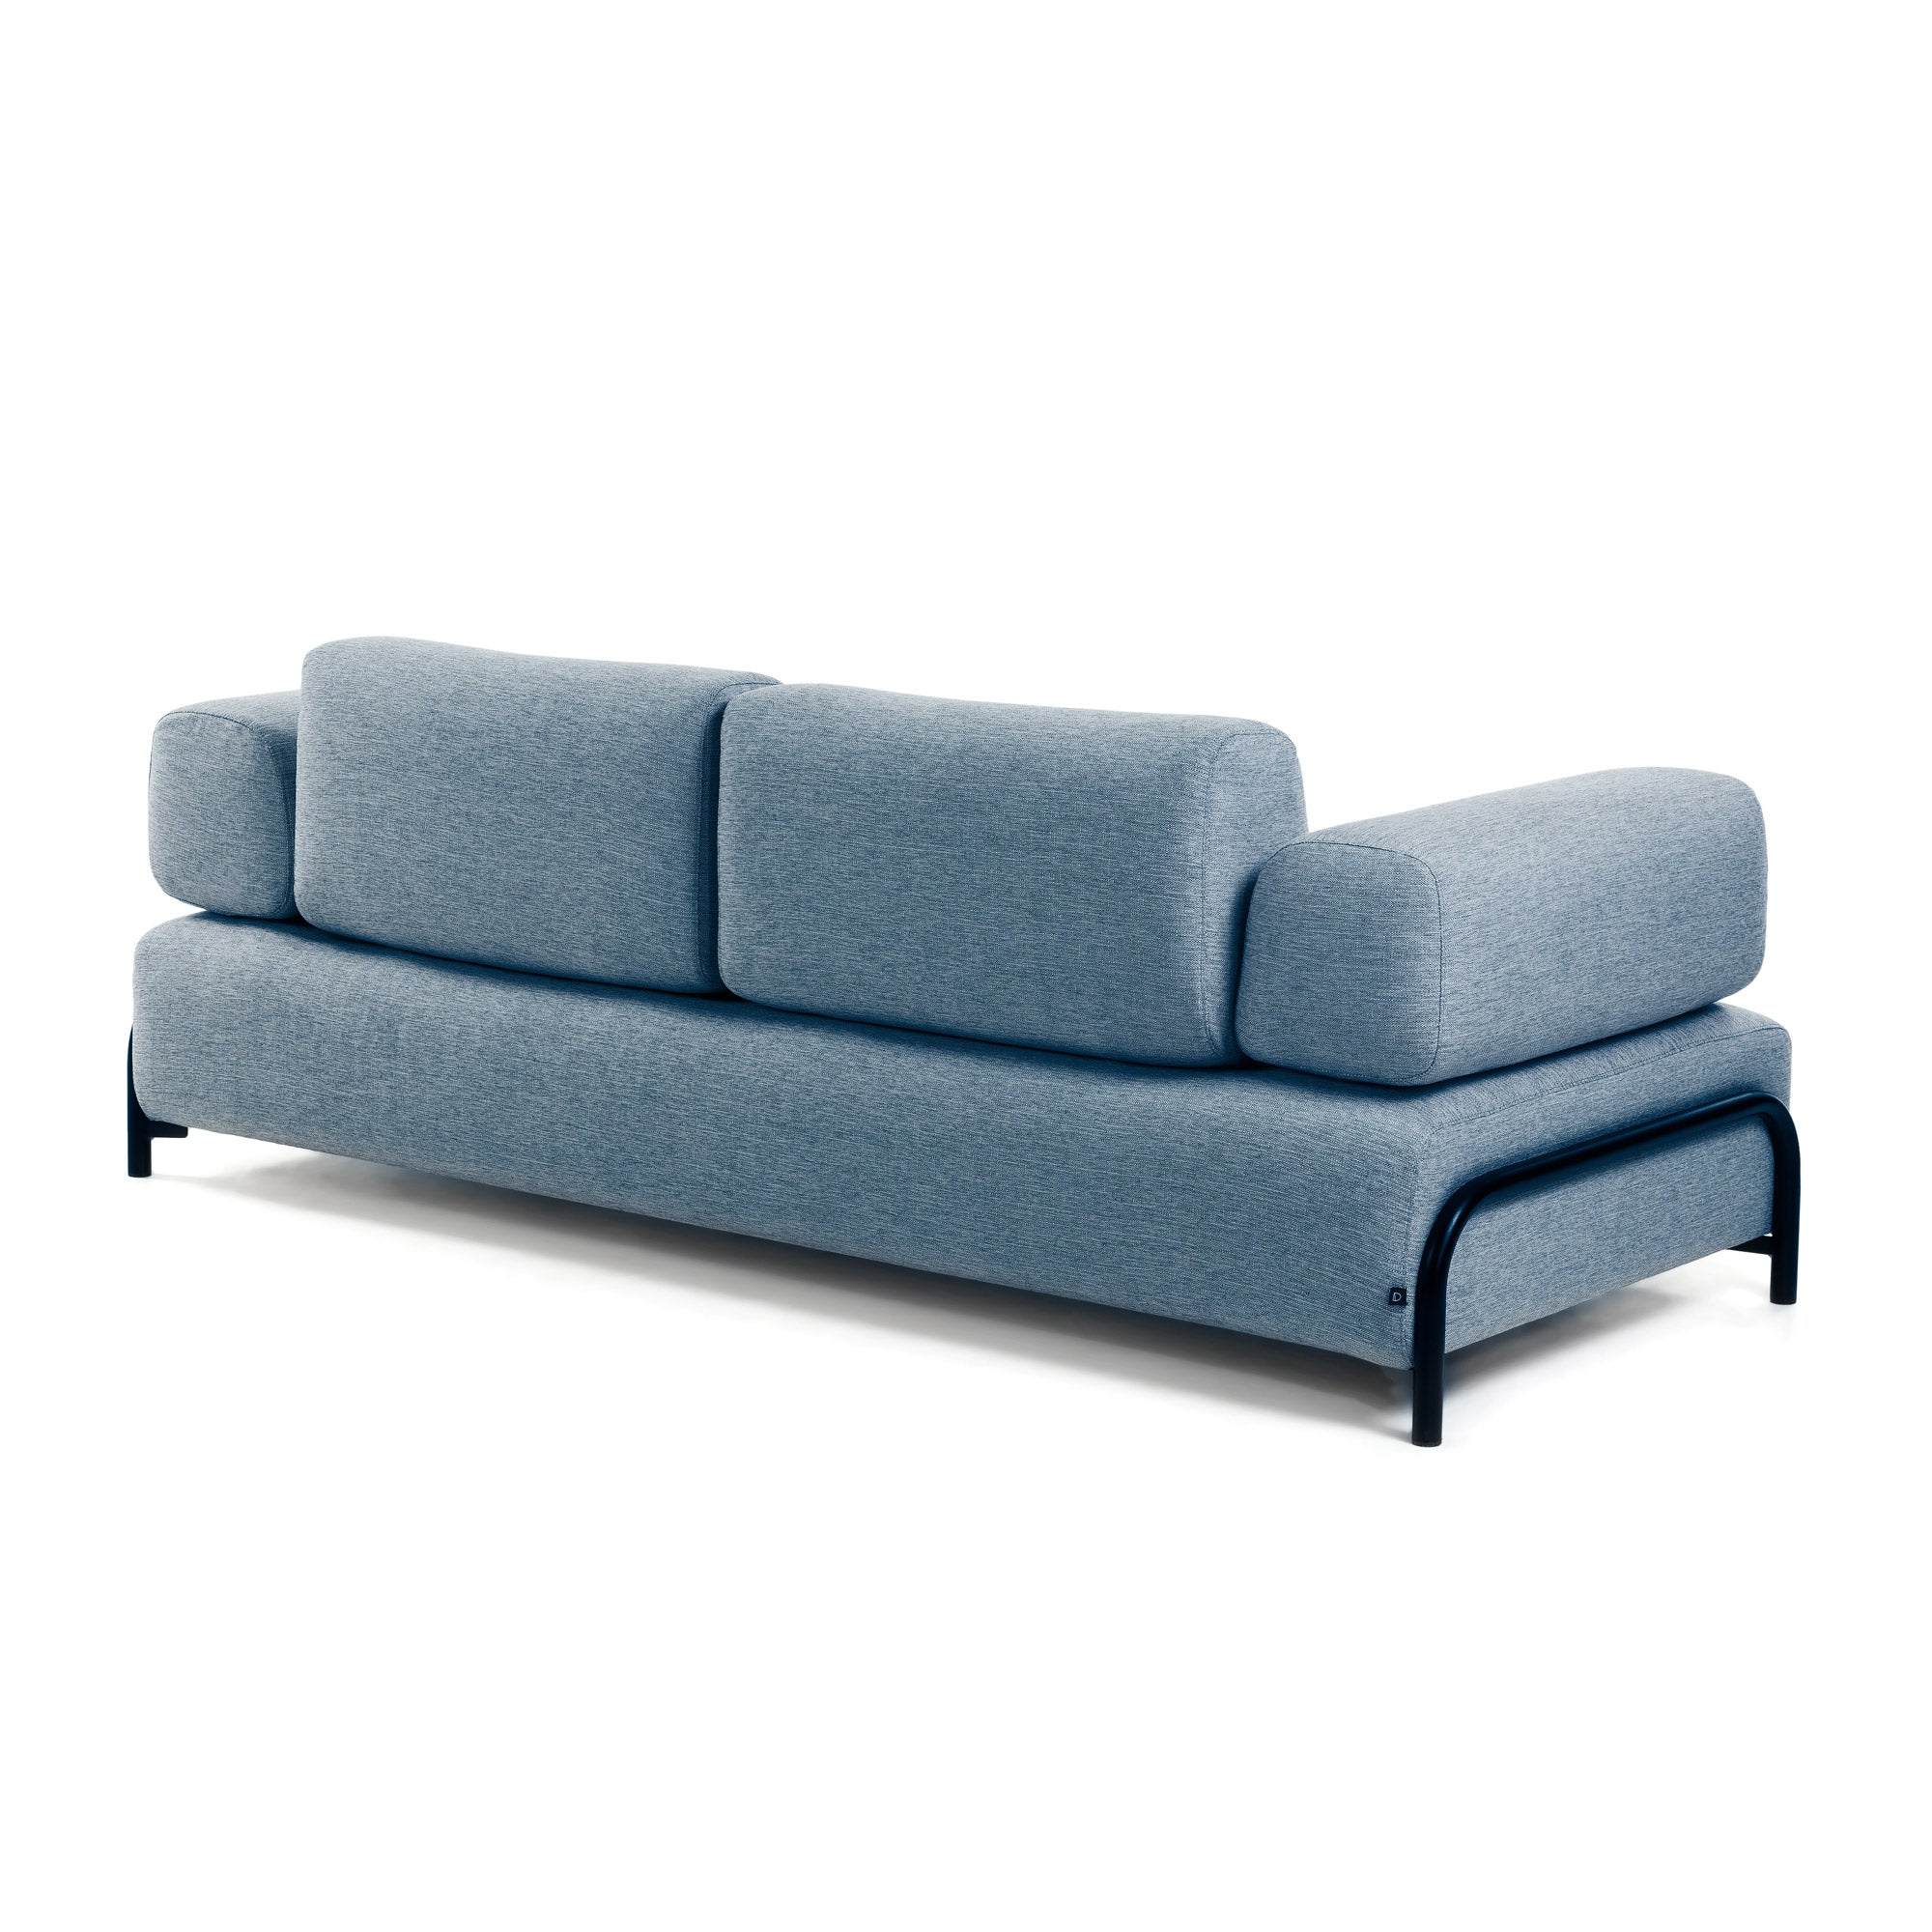 Compo 3 személyes kanapé kék színben, 232 cm